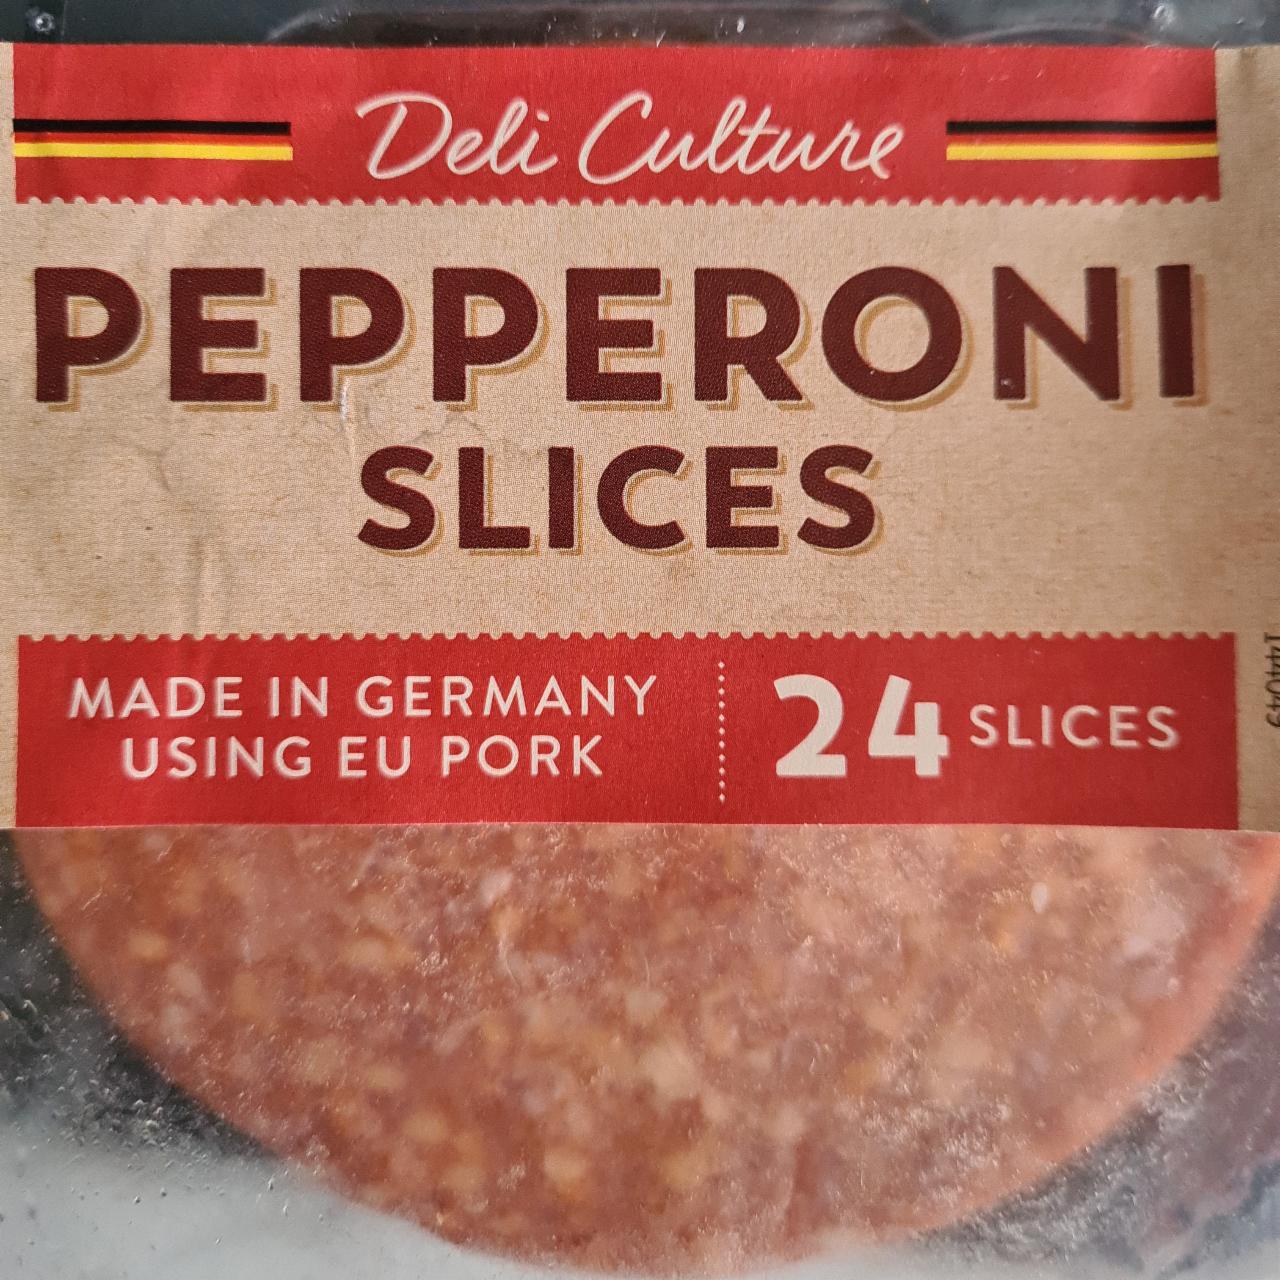 Fotografie - Pepperoni slices Deli Culture